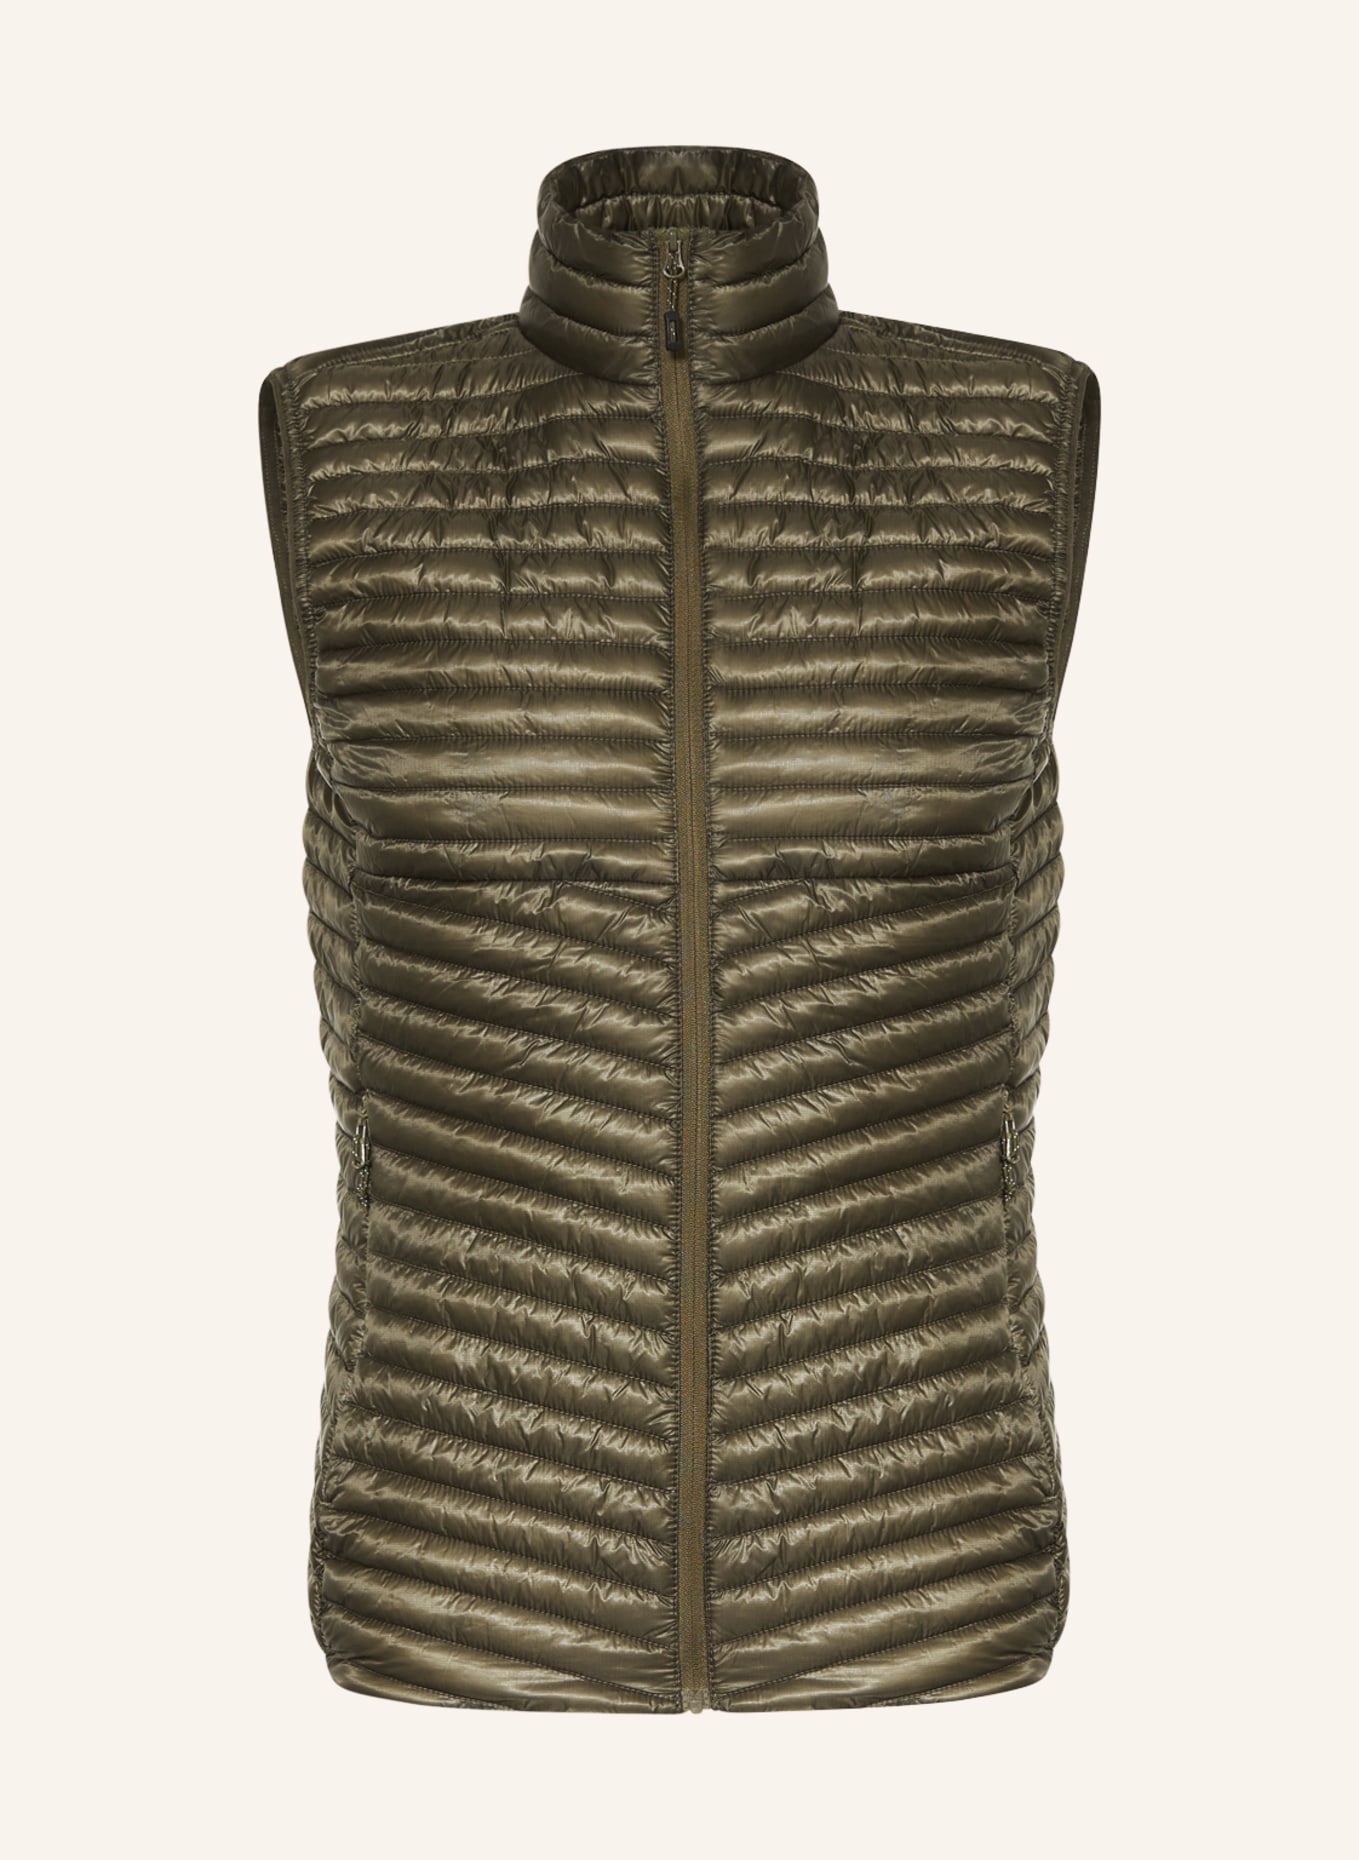 me°ru' Quilted vest KIPNUK, Color: OLIVE (Image 1)